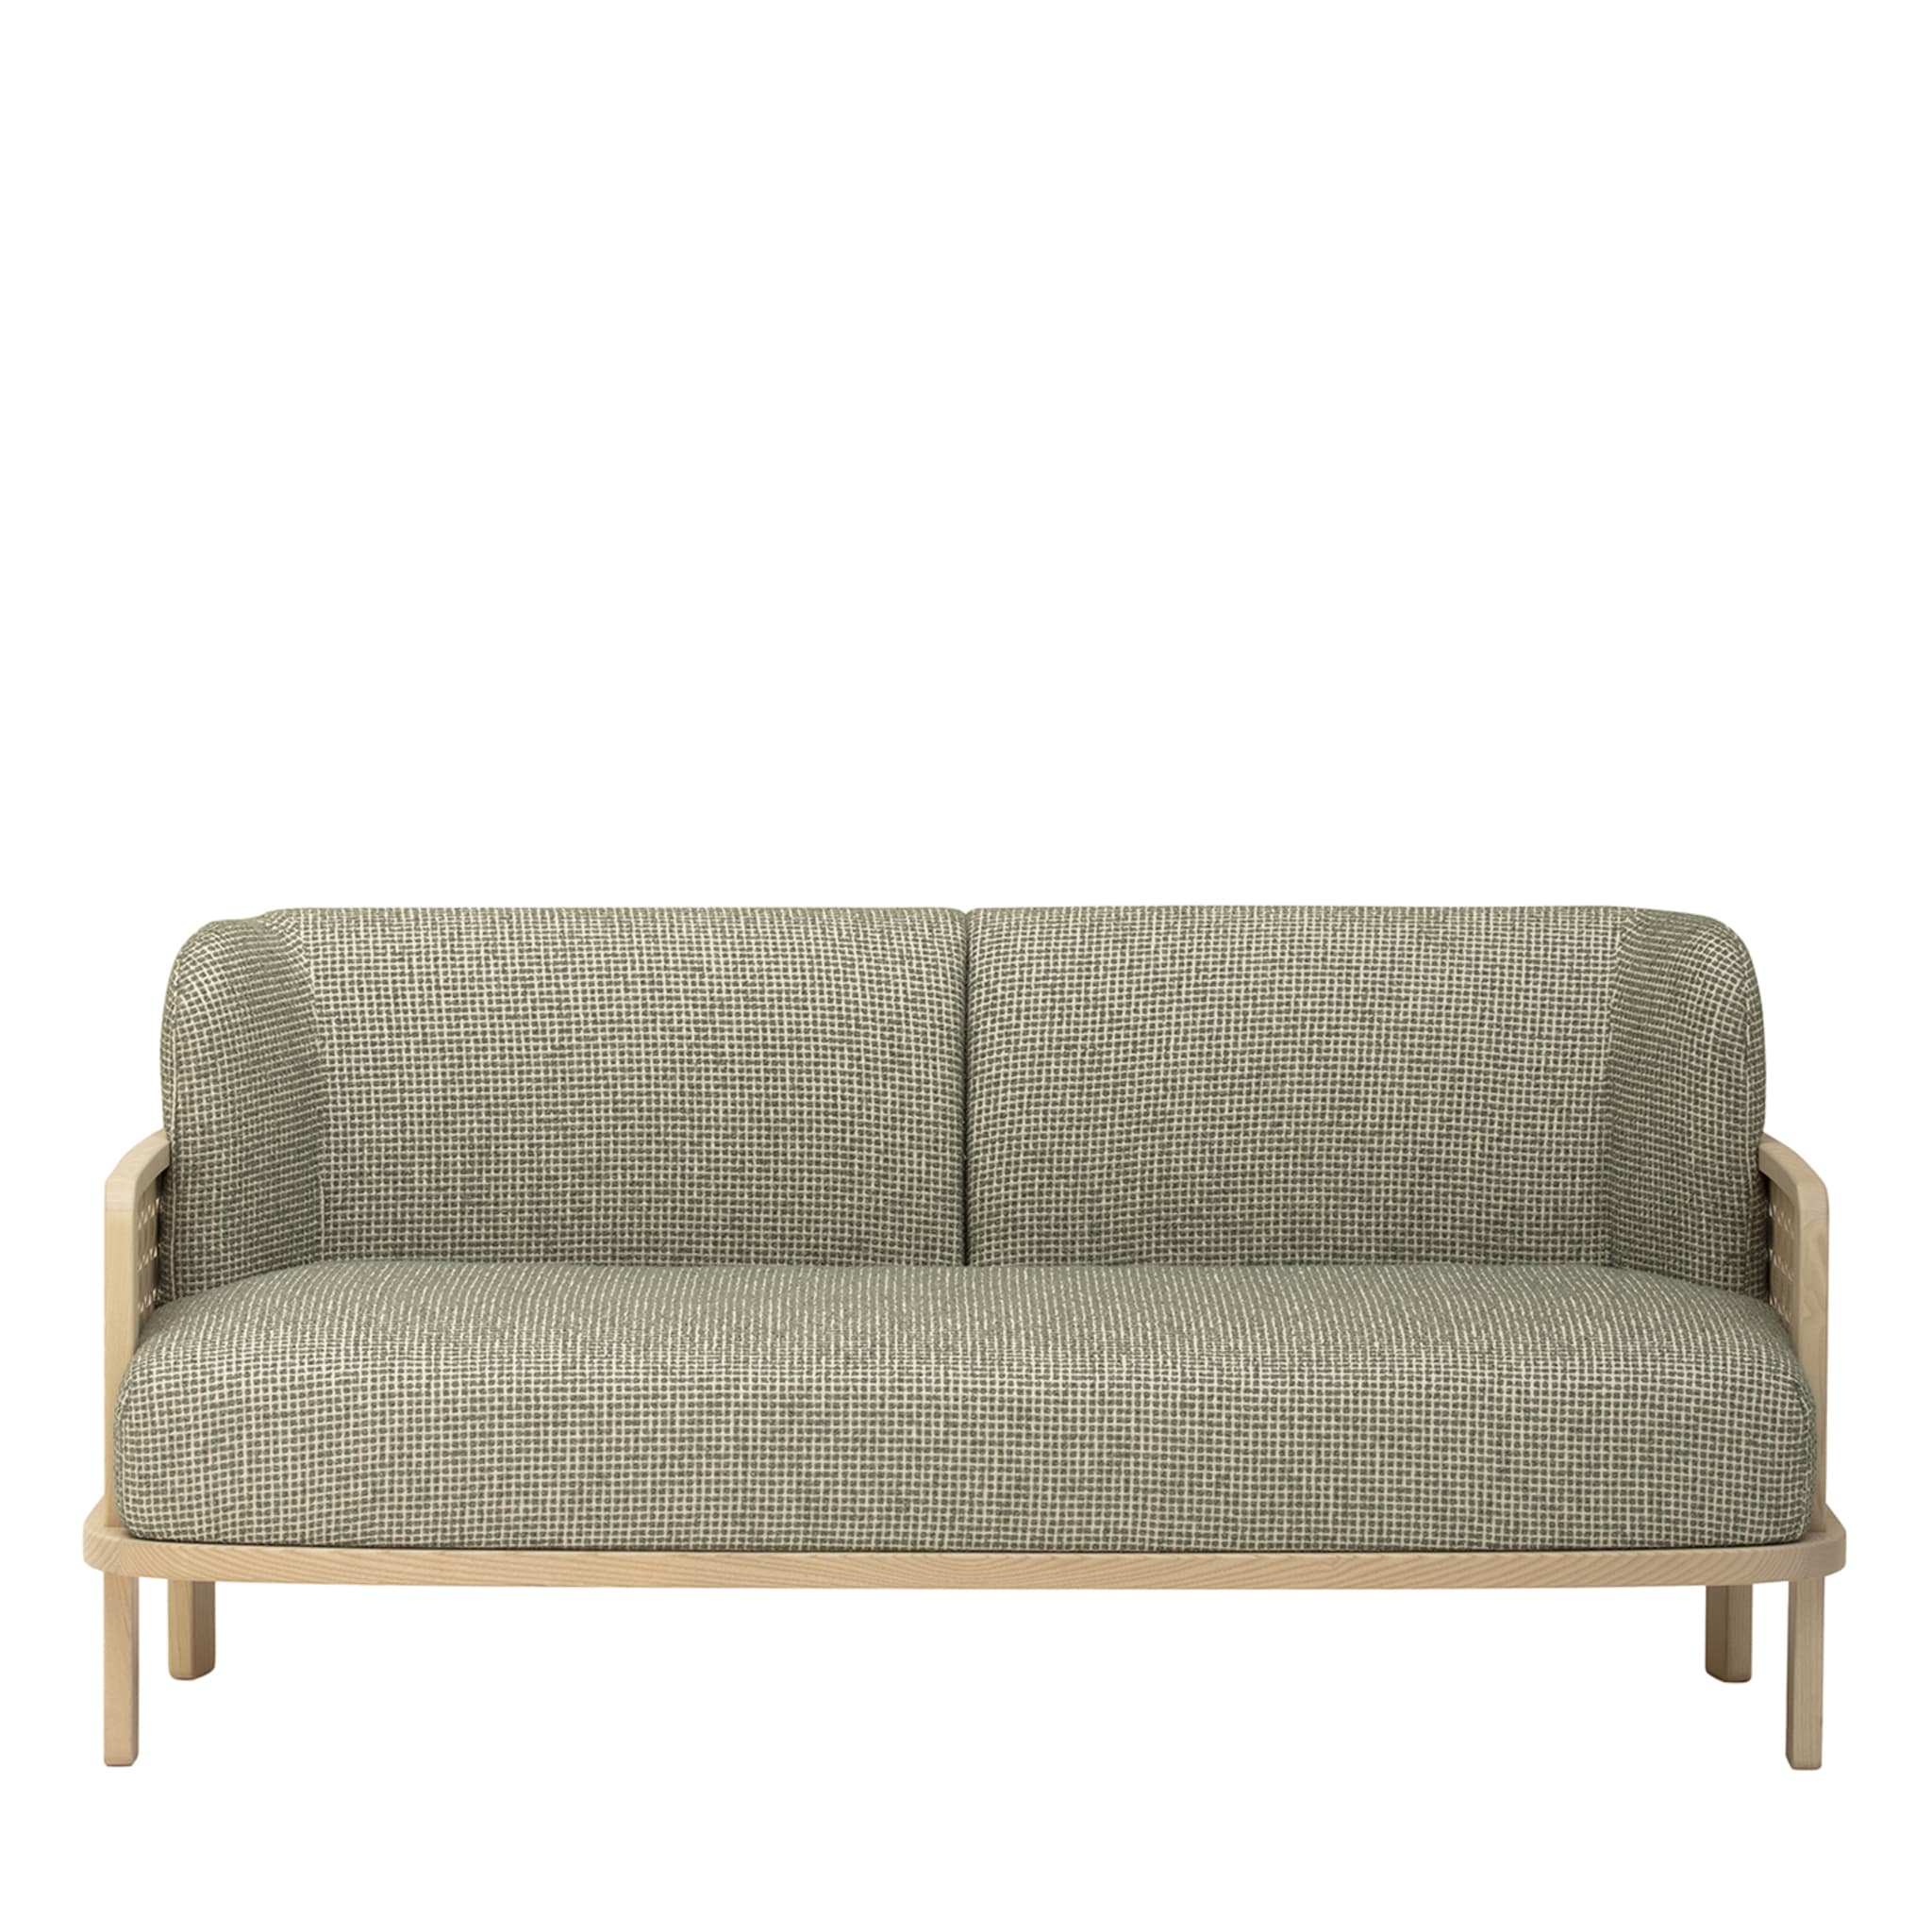 Raquette 181 Green Sofa by Cristina Celestino - Main view